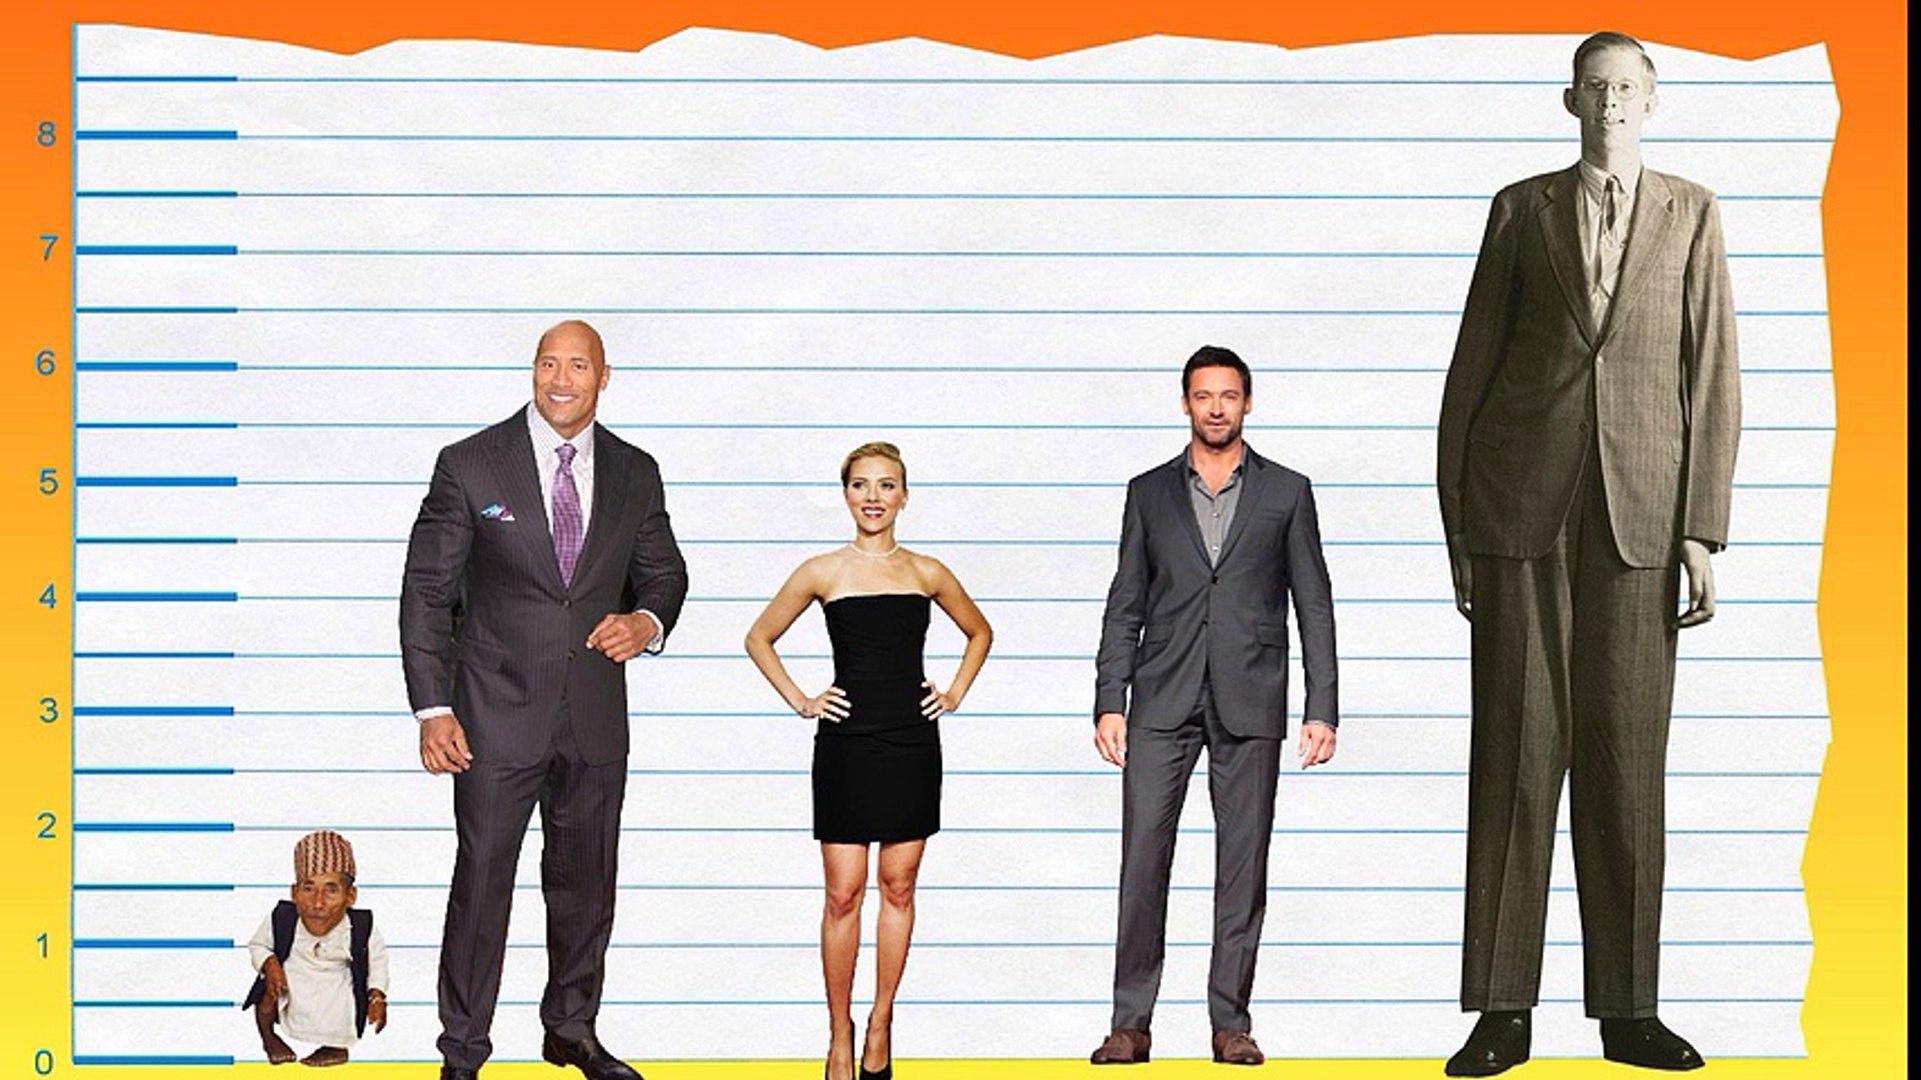 Height group. Рост человека. Мужчины разного роста. Высокий рост у мужчин. 3 Метра по сравнению с человеком.